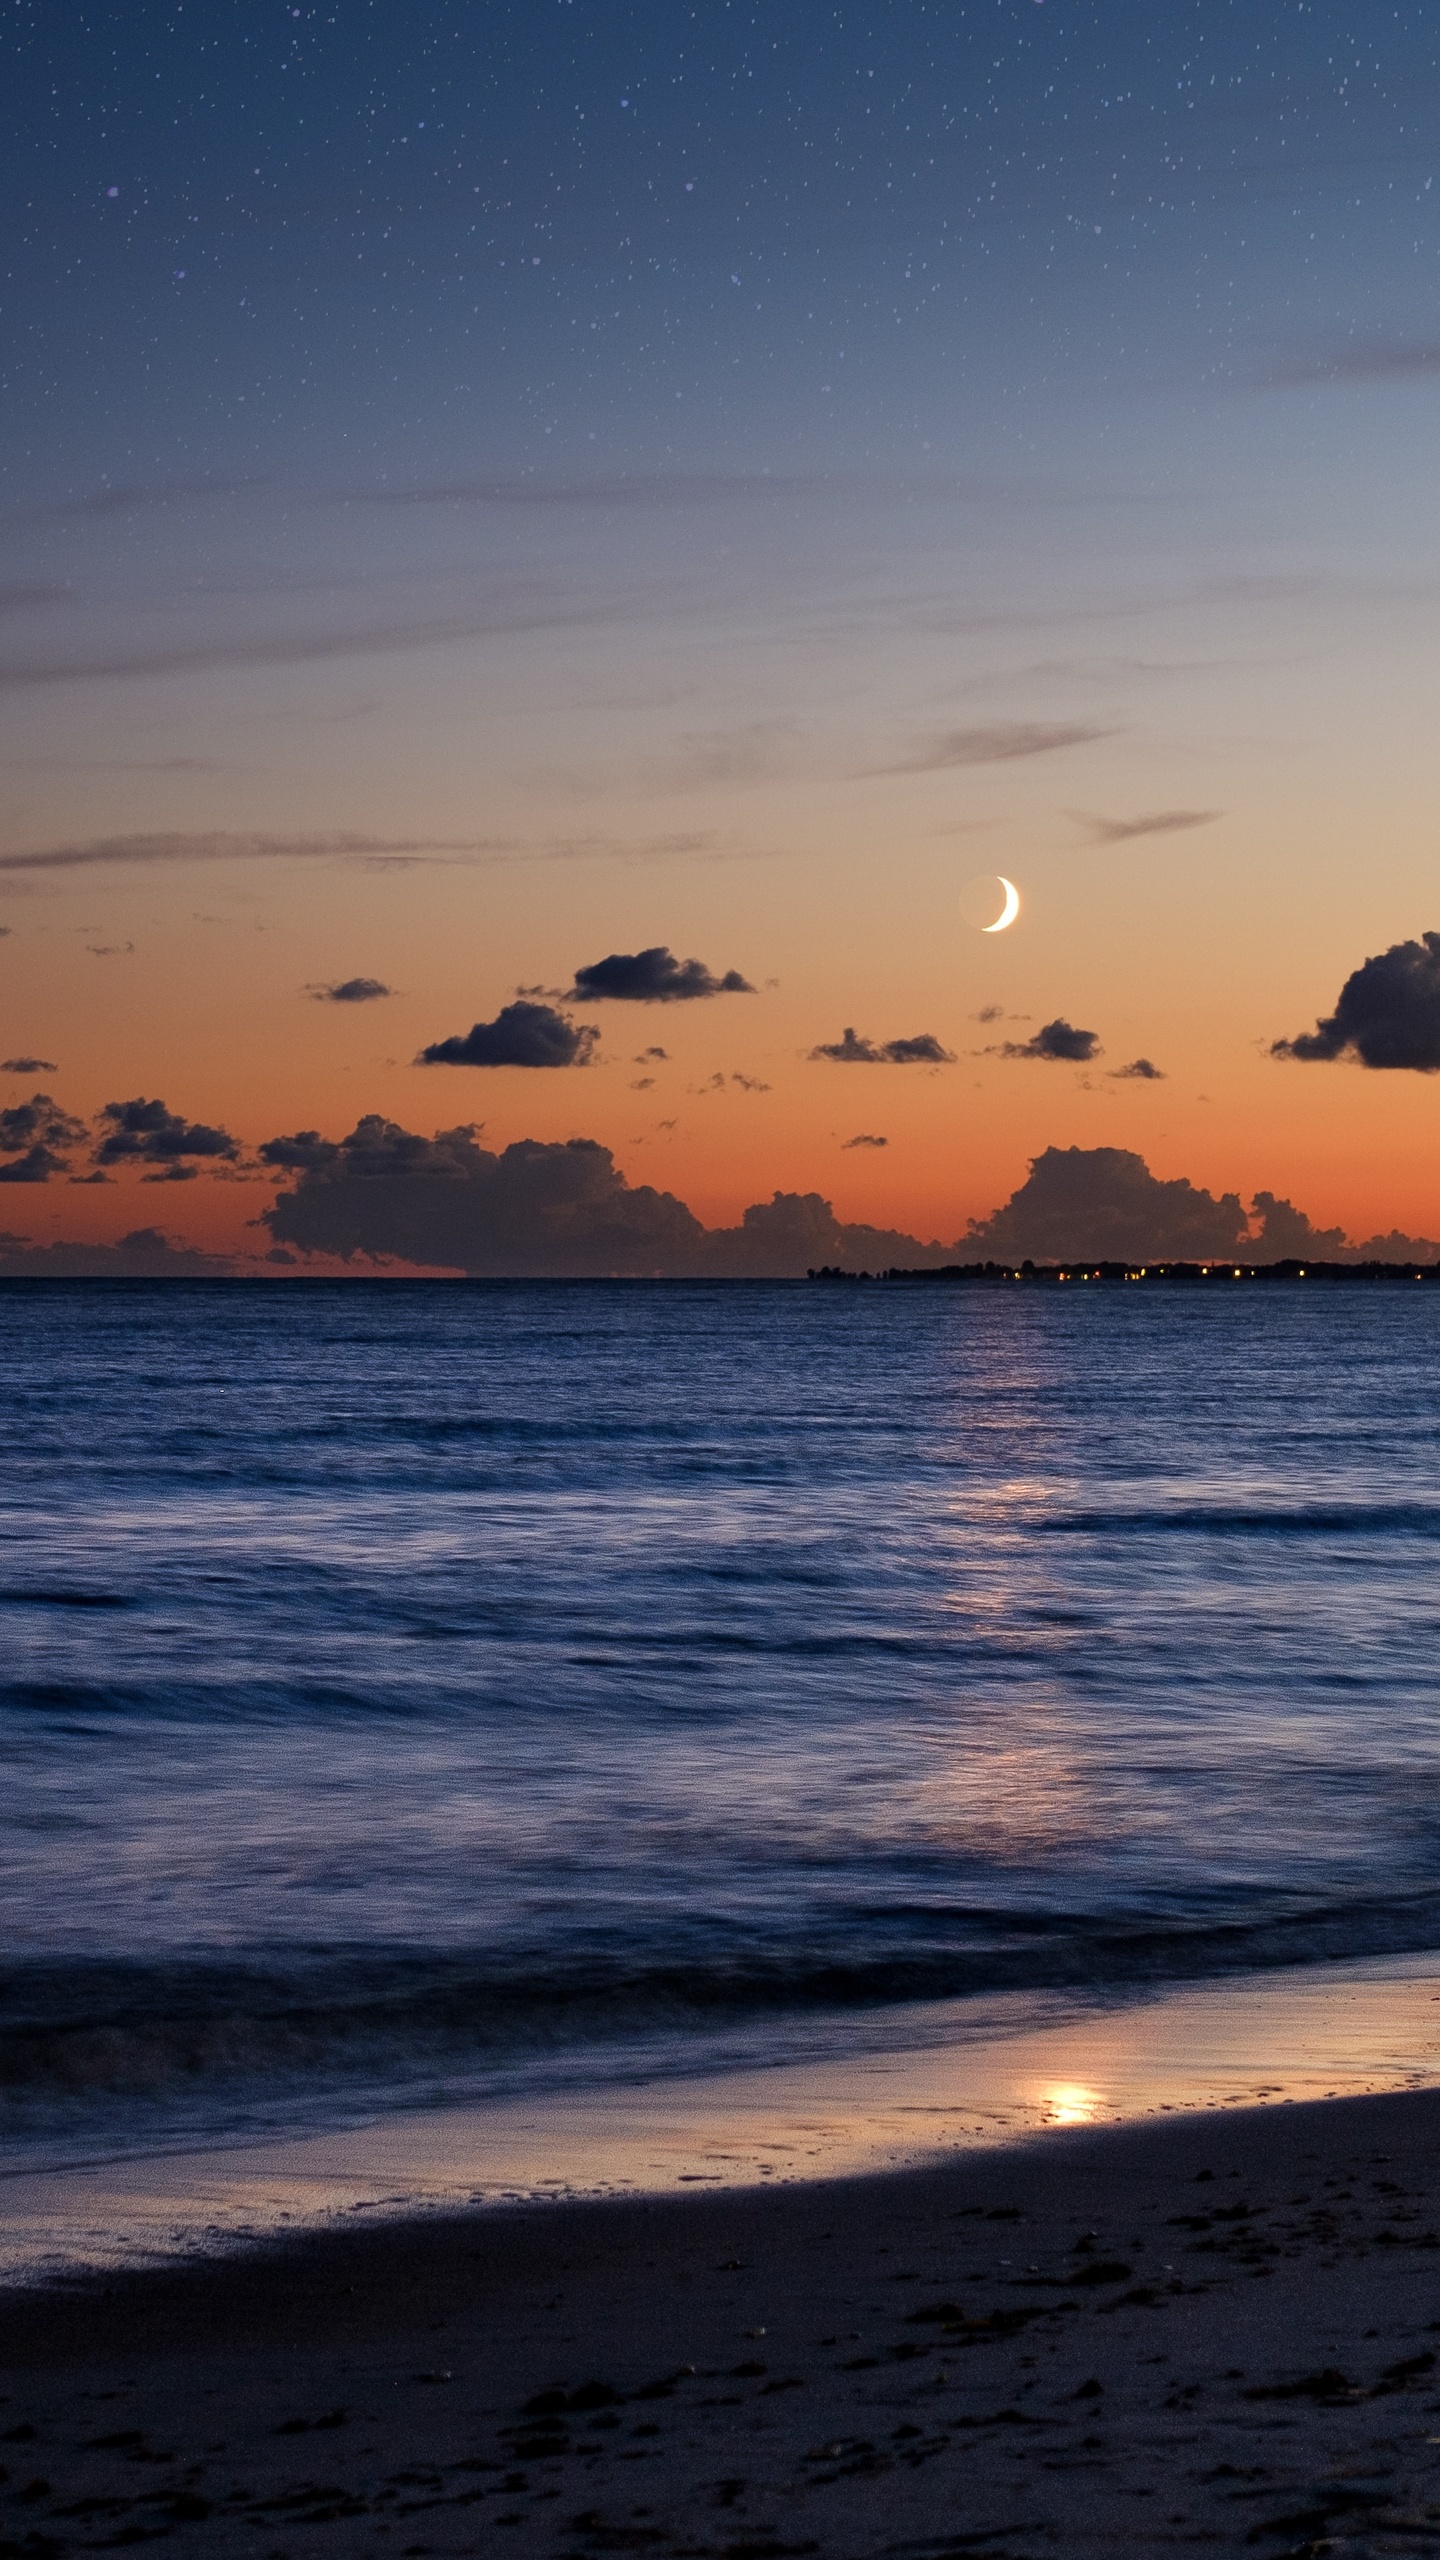 beach-sea-evening-moon-5k-2d.jpg